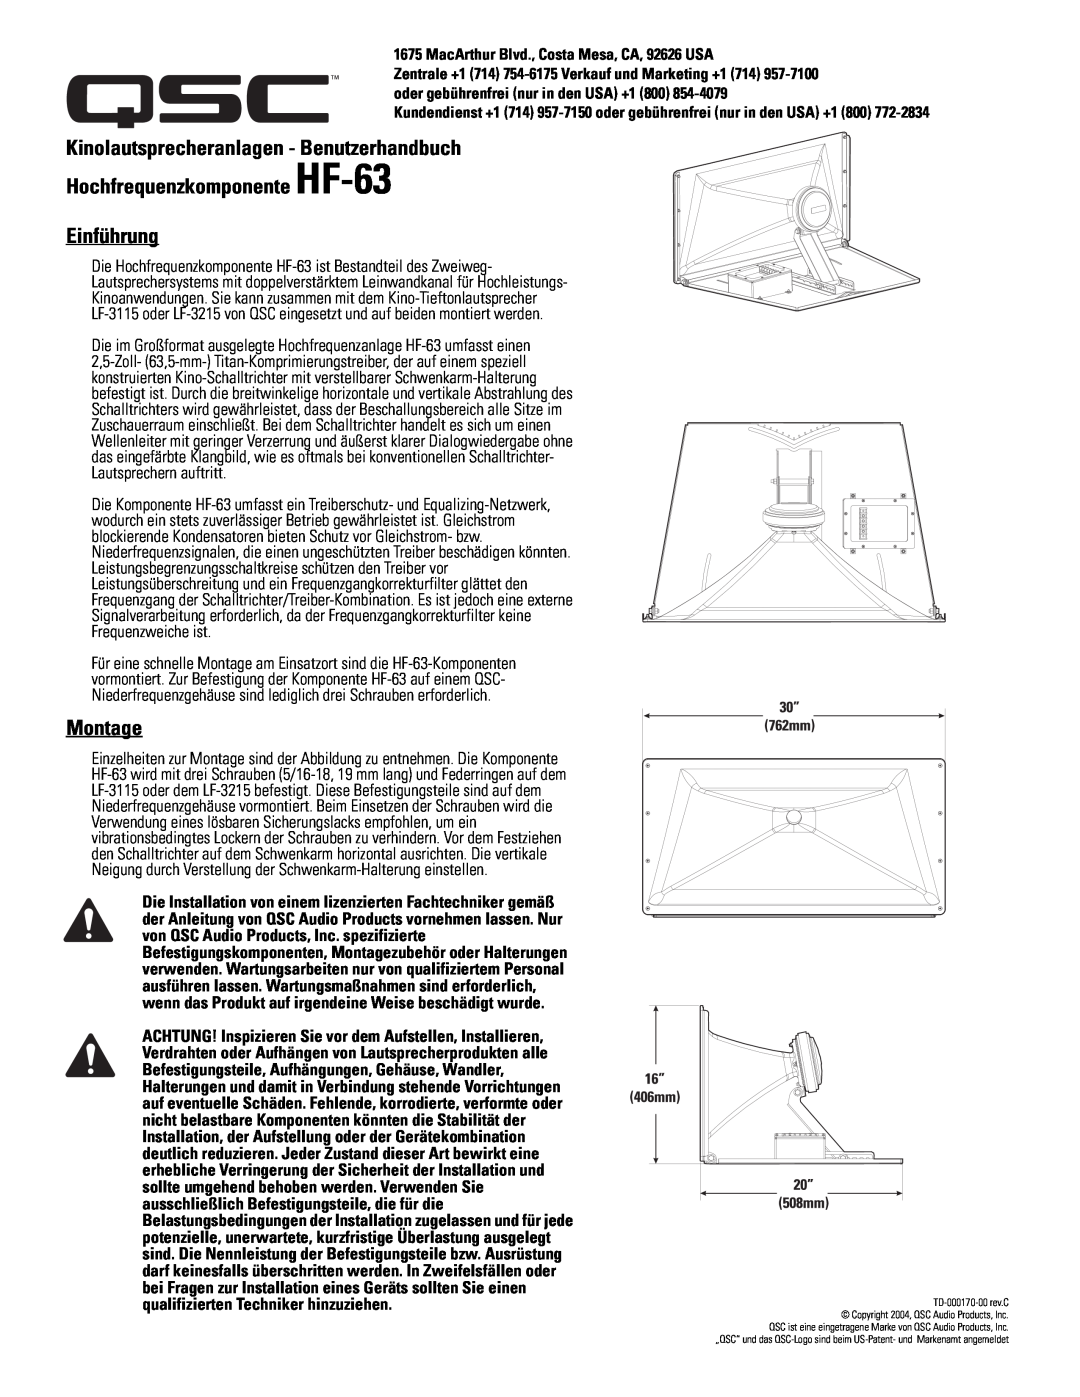 QSC Audio SC-322 Kinolautsprecheranlagen - Benutzerhandbuch, Hochfrequenzkomponente HF-63 Einführung, Montage 